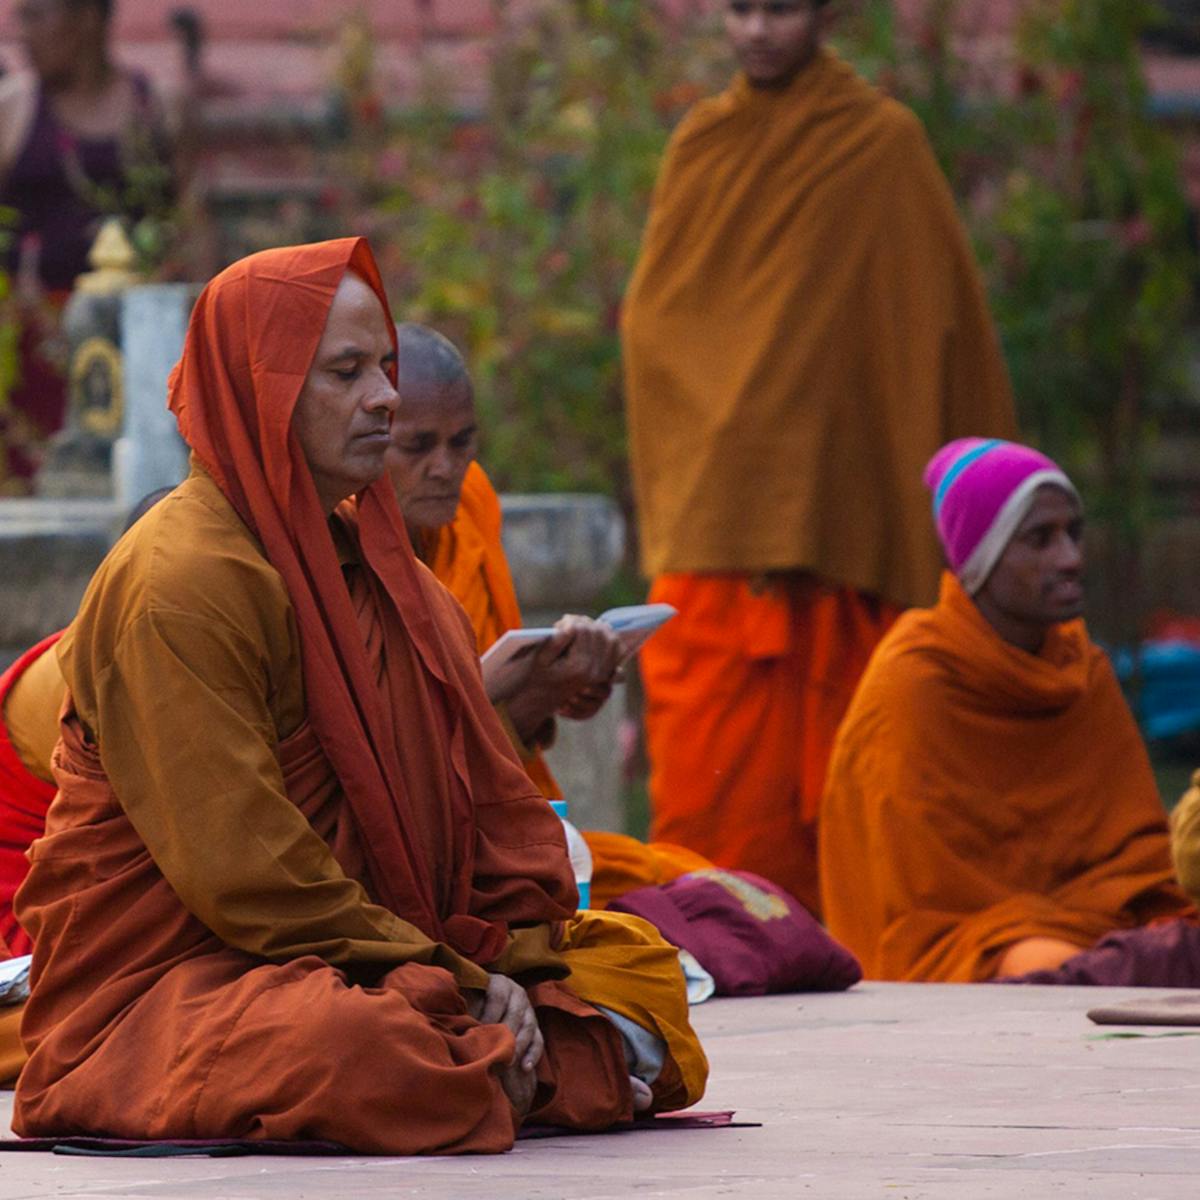 Seated people dressed in orange robes meditating.